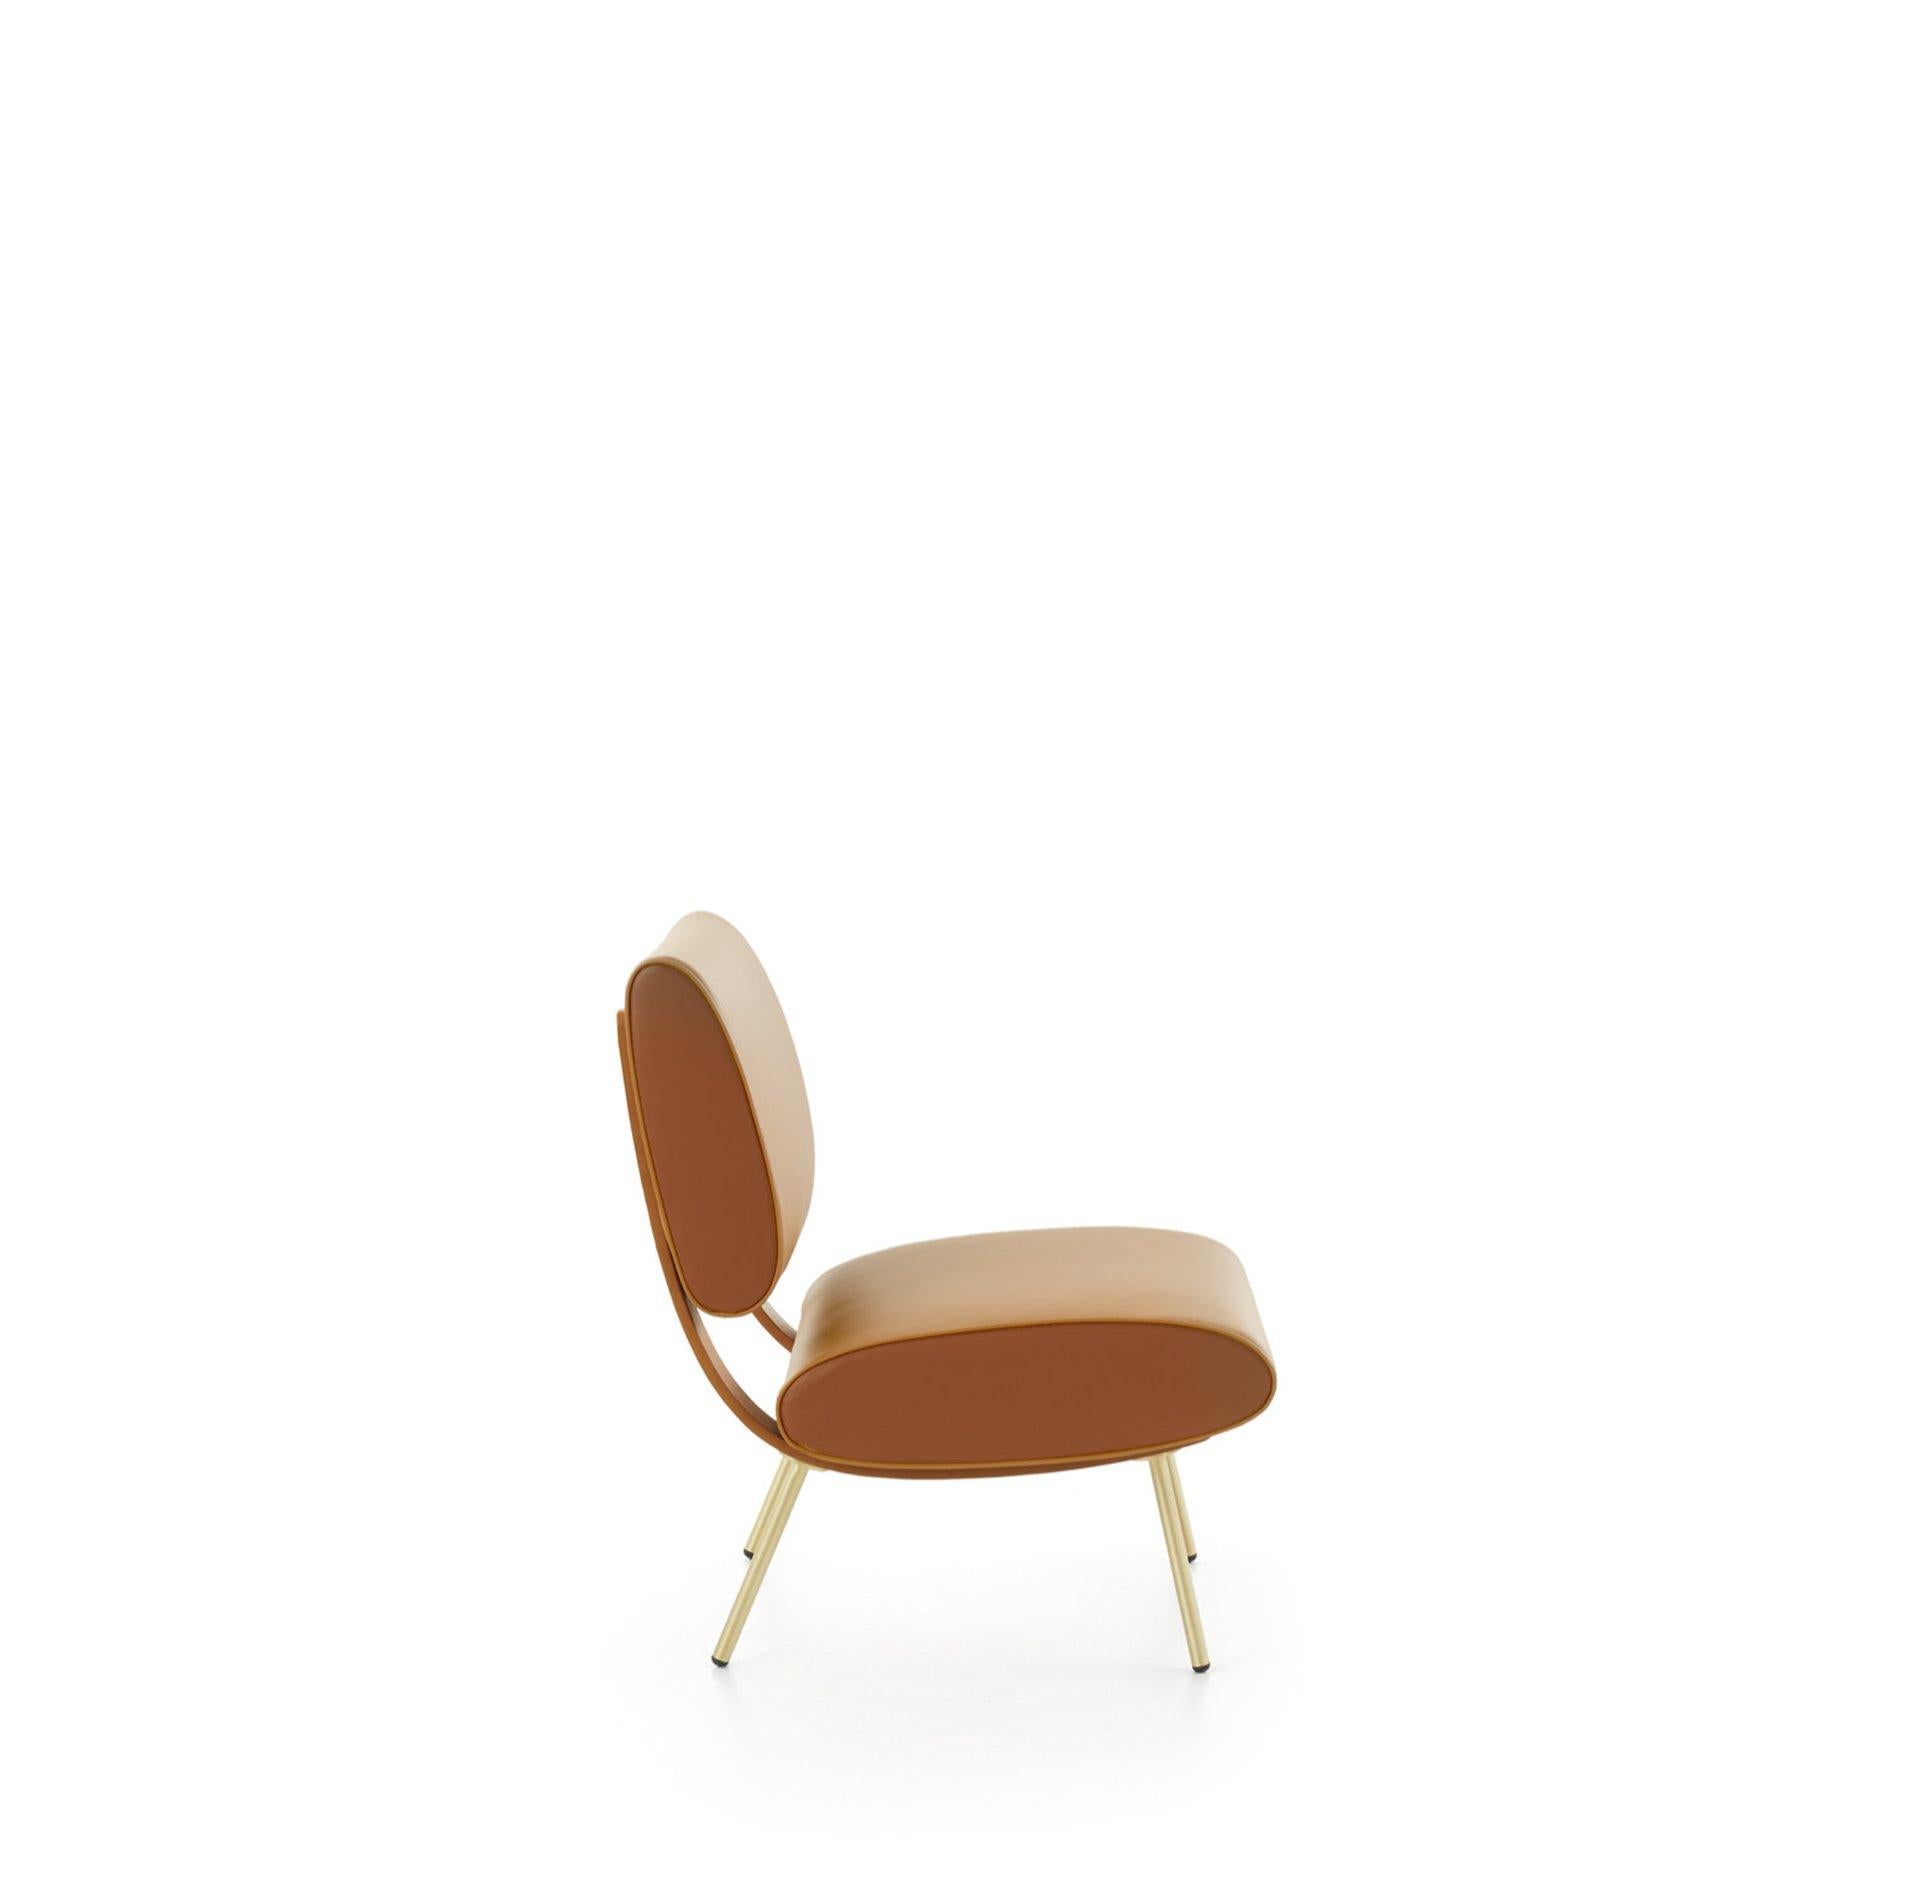 Sessel aus Leder von Gio Ponti. Fachmännisch hergestellt in Italien, exklusiv von Molteni&C.

Das Ende des Zweiten Weltkriegs läutete eine Ära der Kreativität ein, und das war auch beim Möbeldesign nicht anders. Dieser runde Stuhl erinnert an den